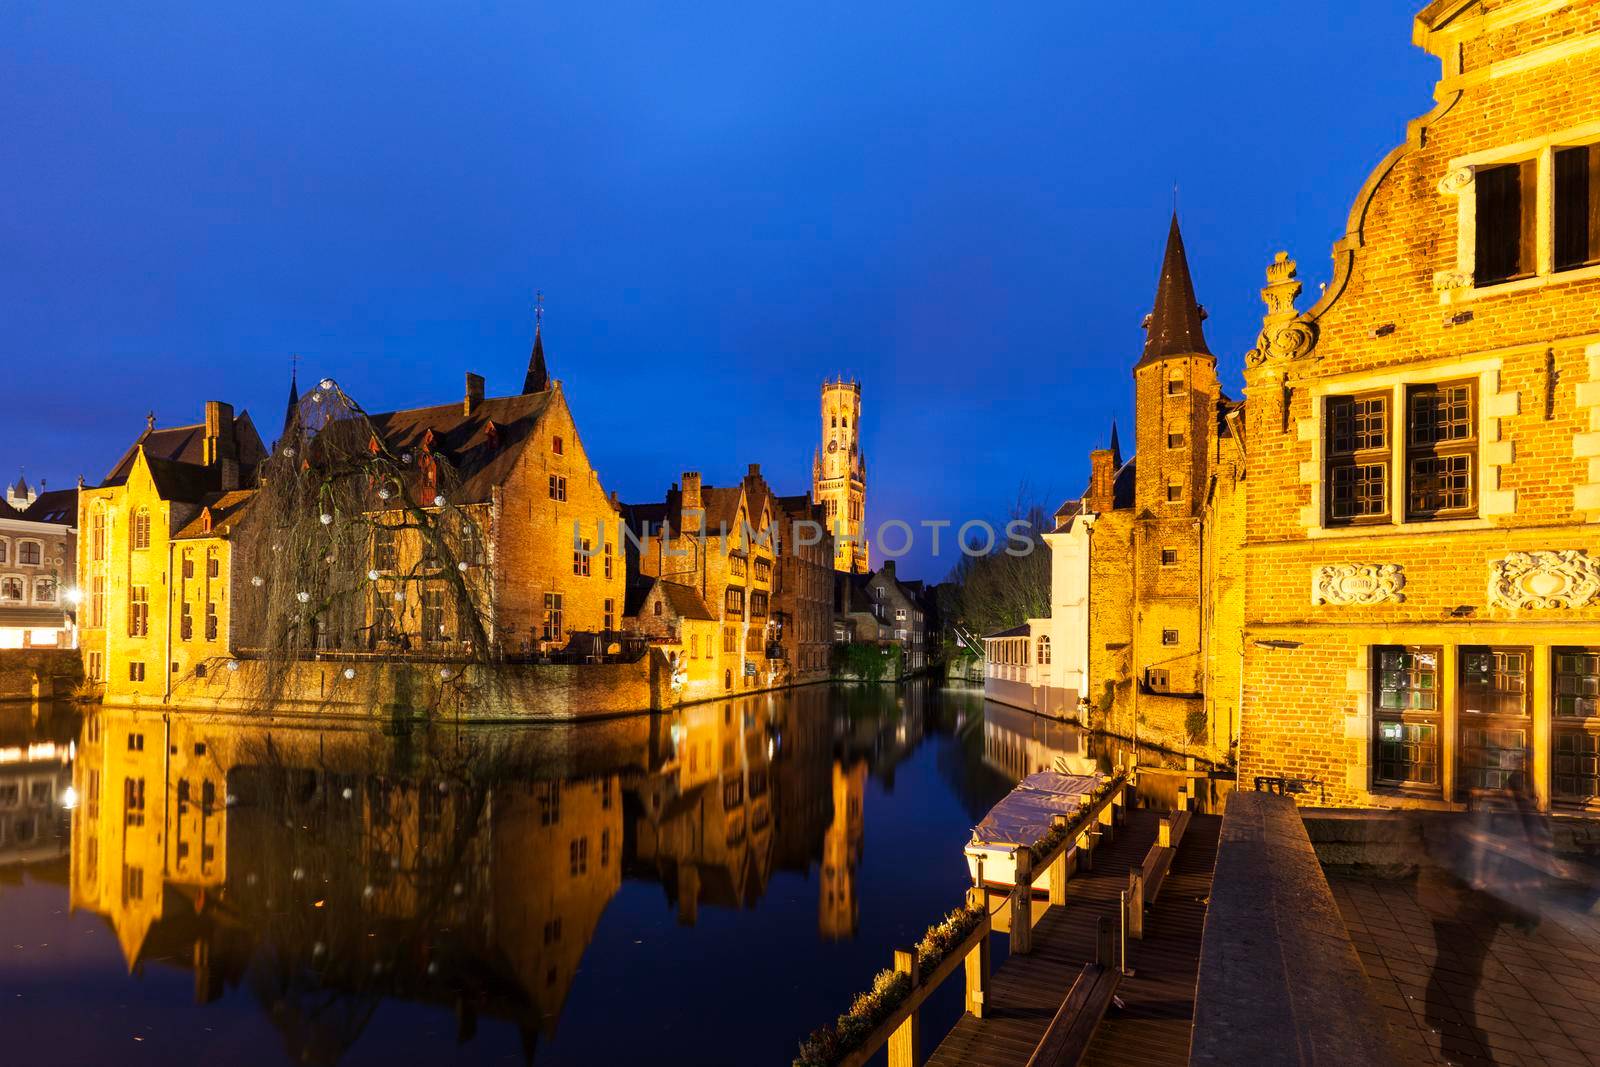 Belfry of Bruges by benkrut